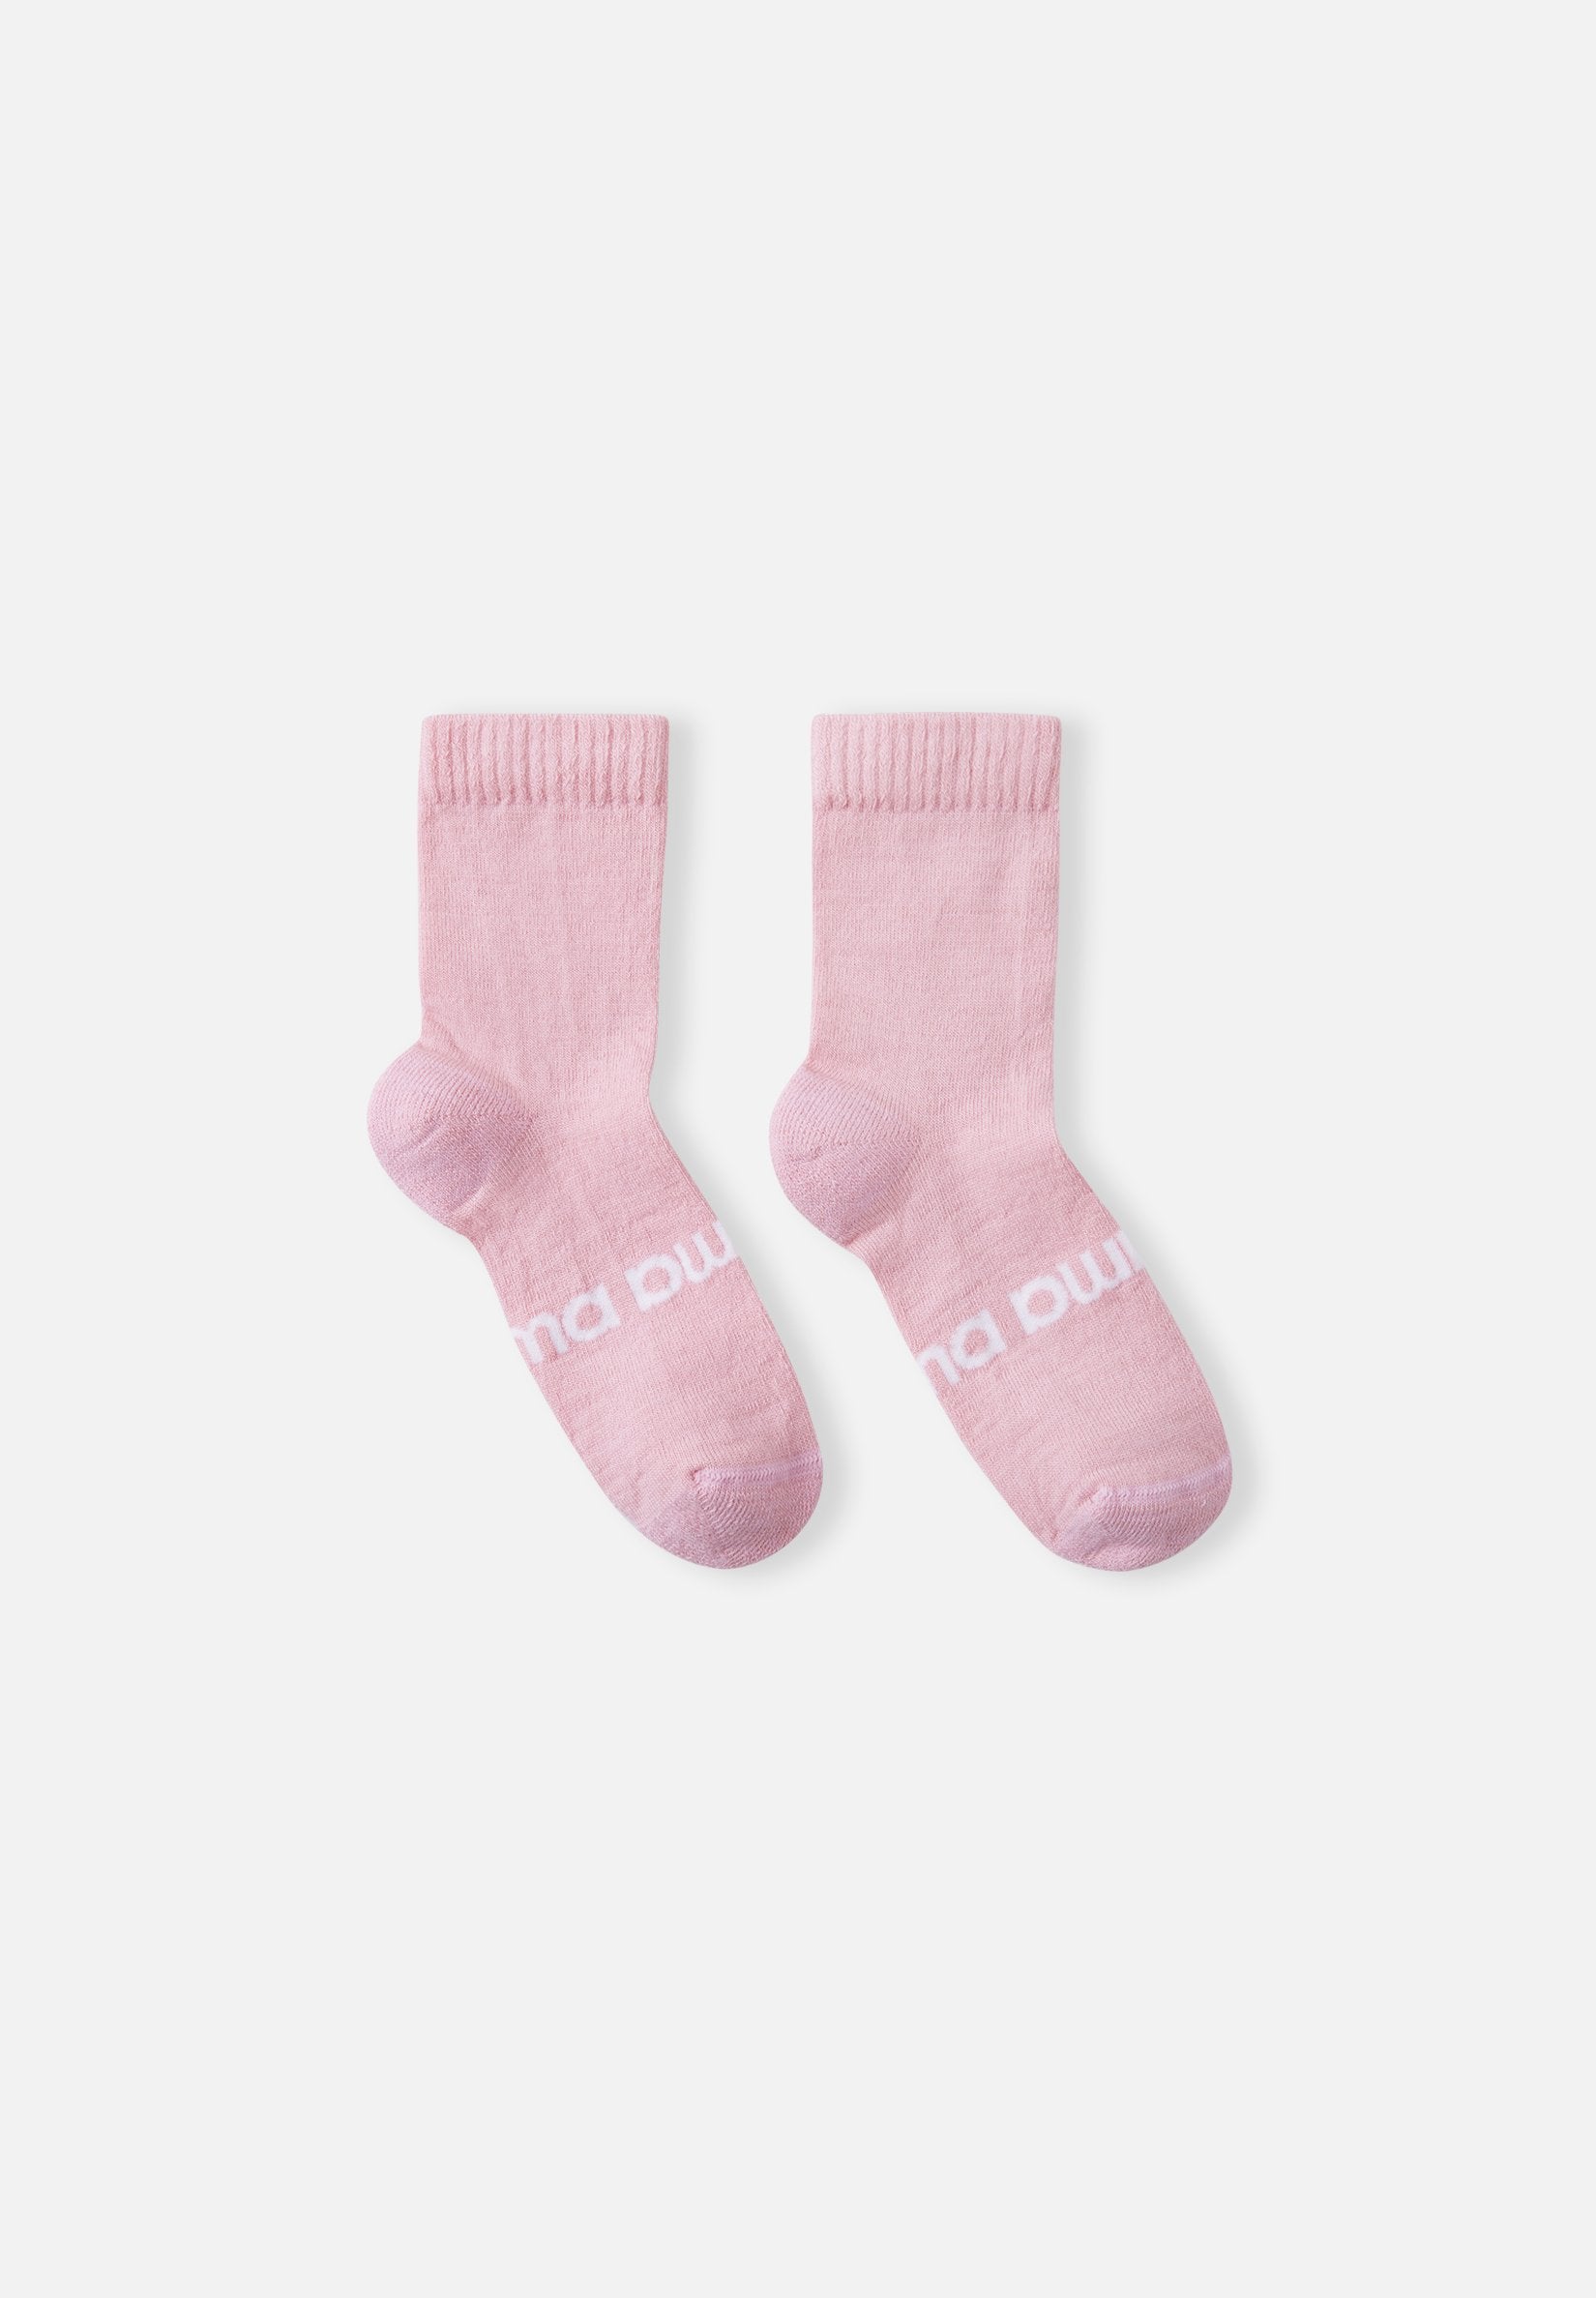 Wool Socks, Baby and Toddler, Pink & Rose – Woolino